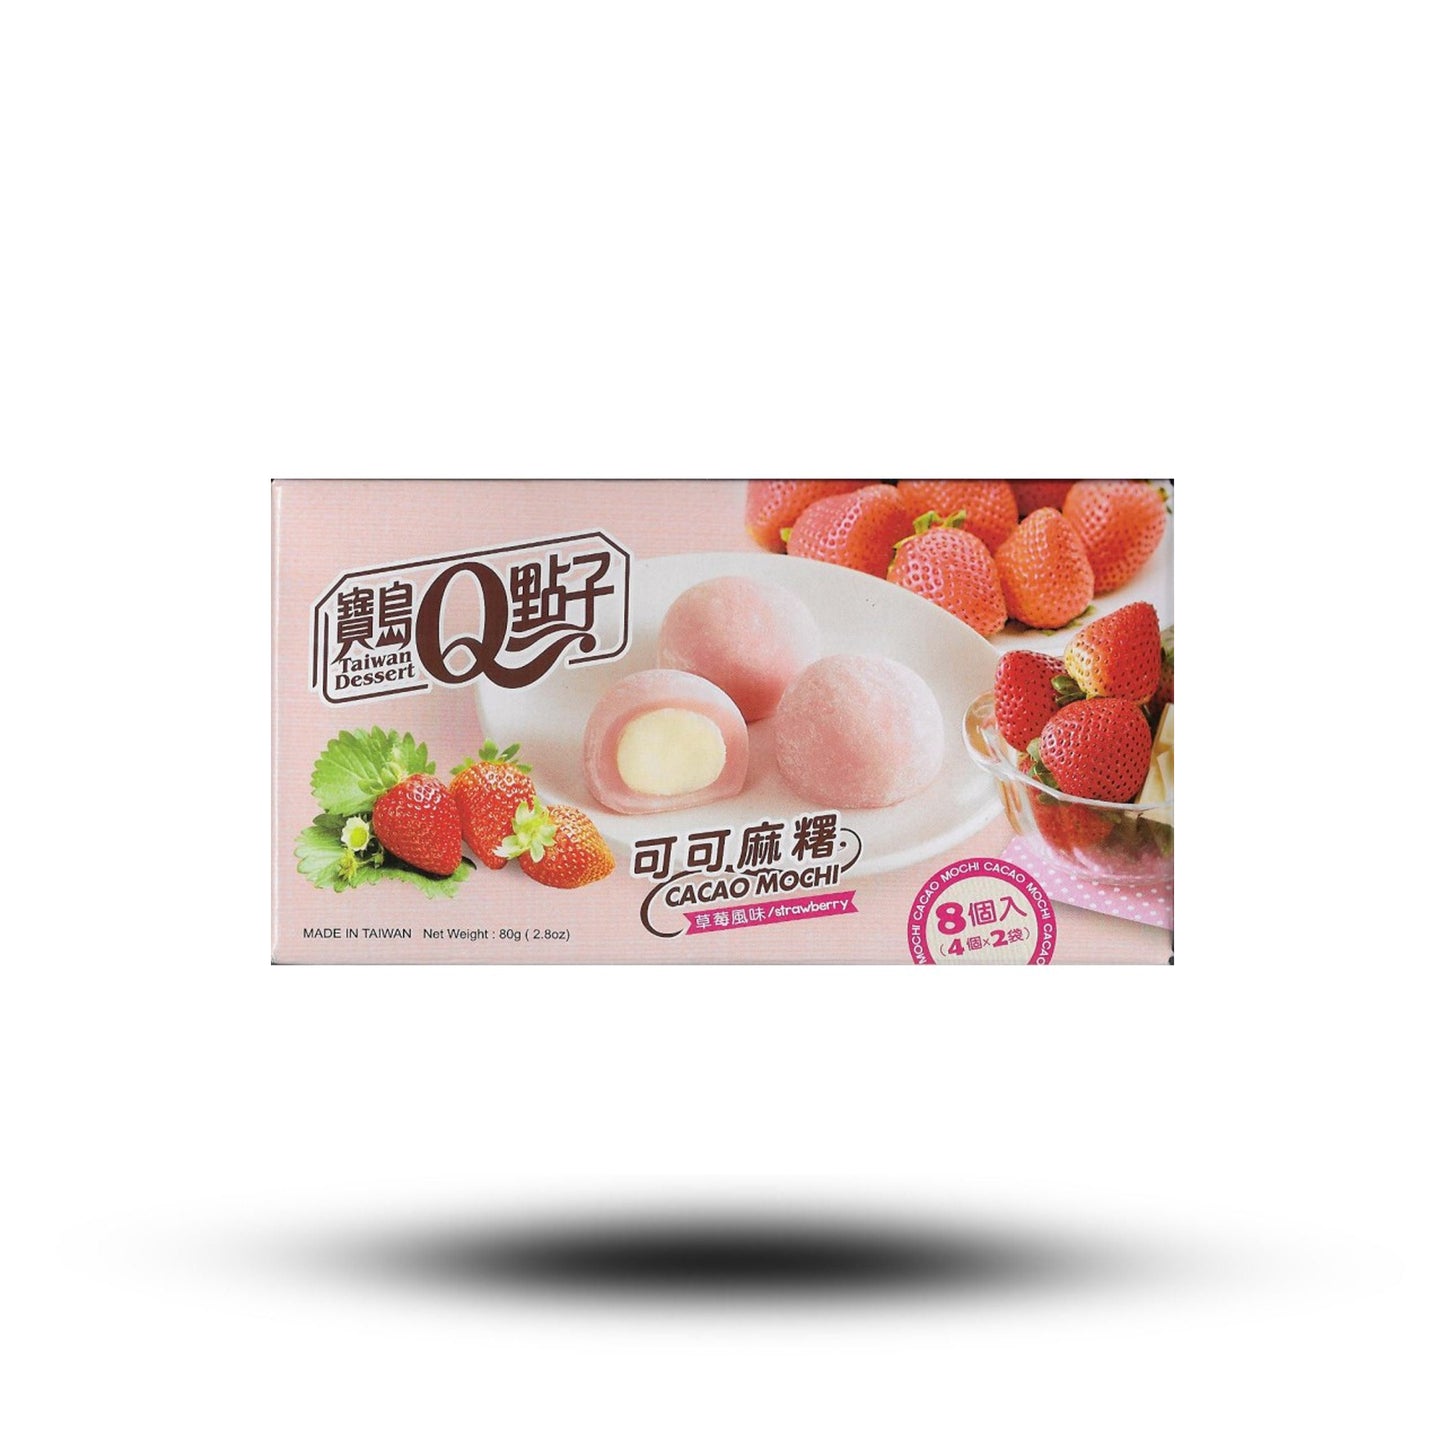 TaiwanDesserts Strawberry Mochi 80g